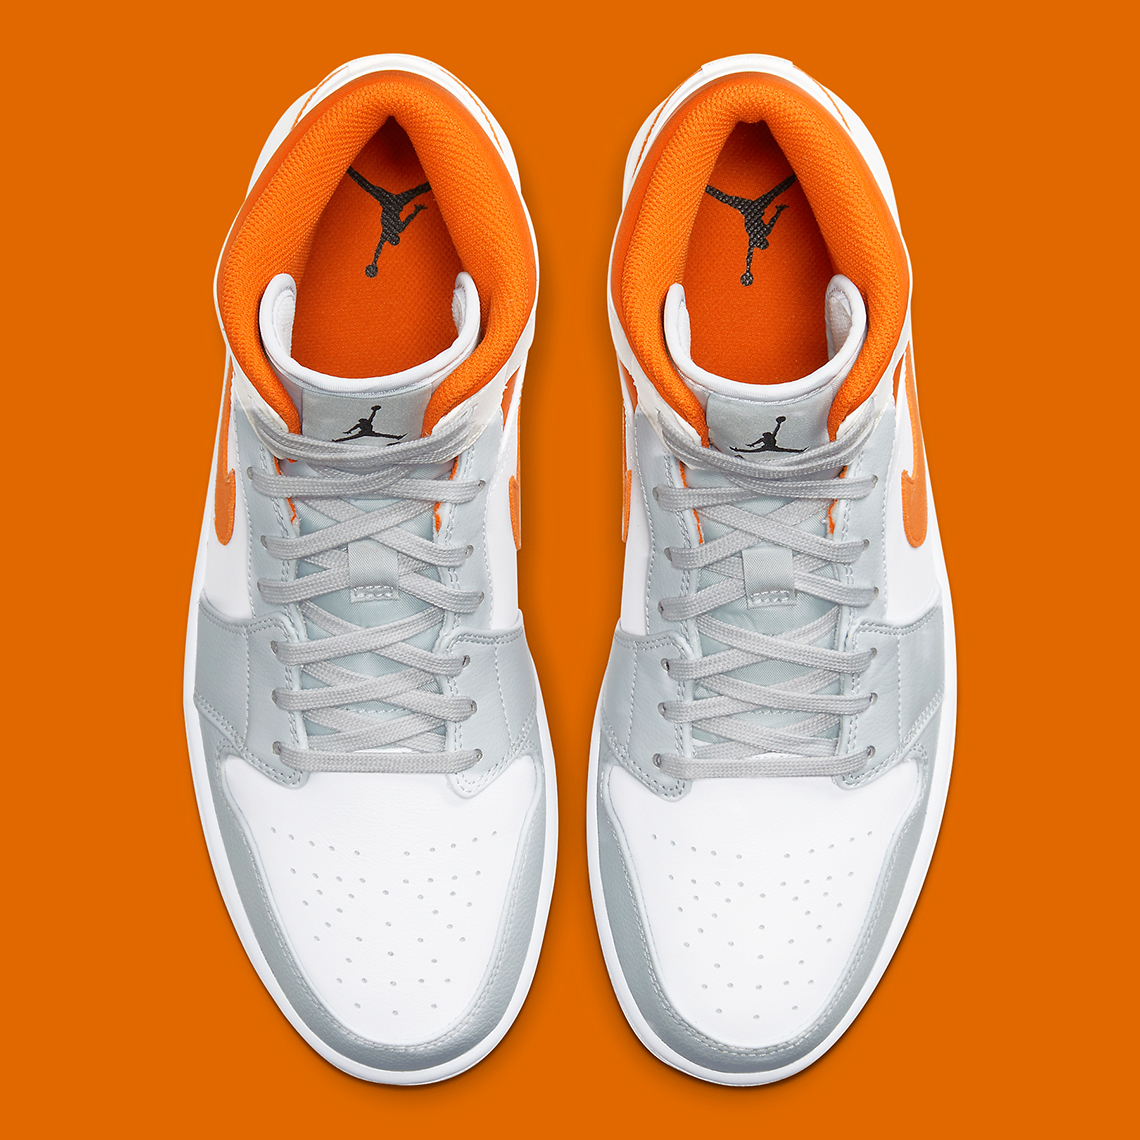 grey white and orange jordans